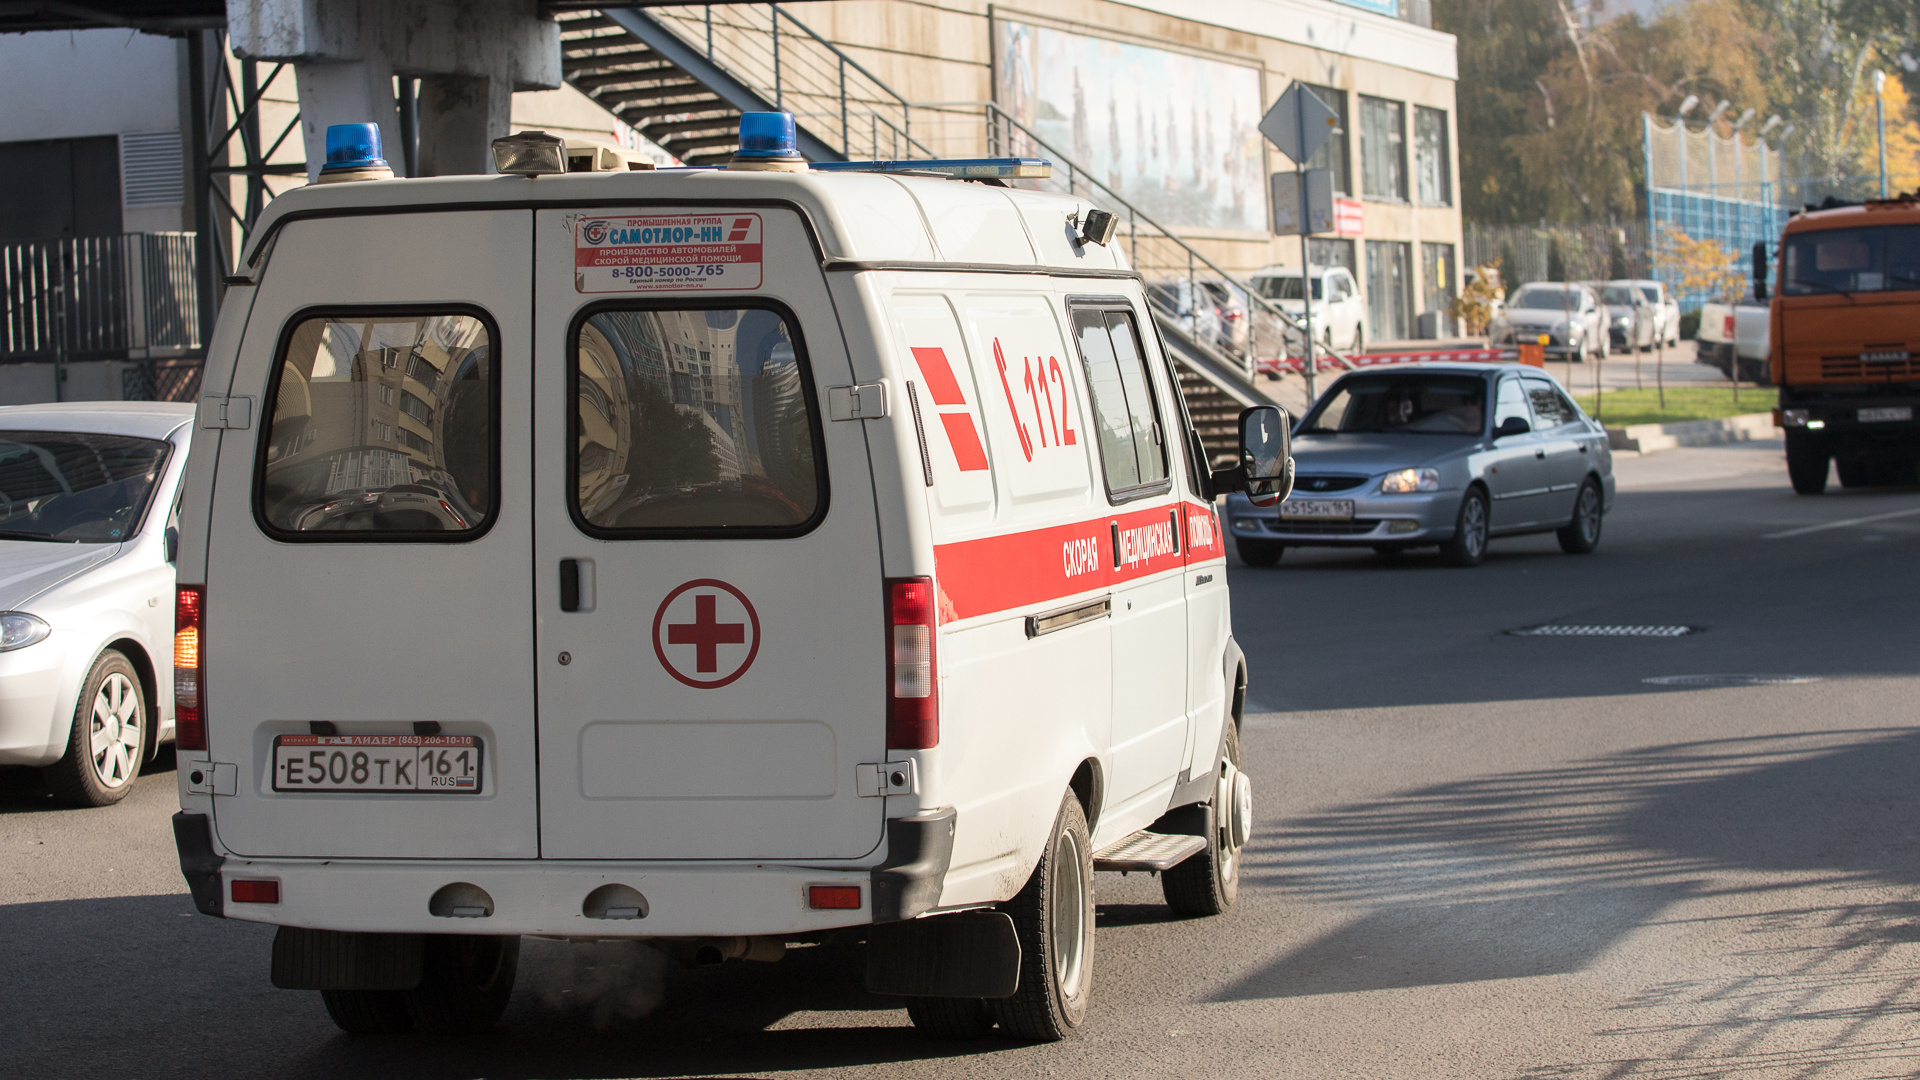 В Кагальницком районе оштрафовали главврача ЦРБ, оставившего персонал без «коронавирусных» доплат